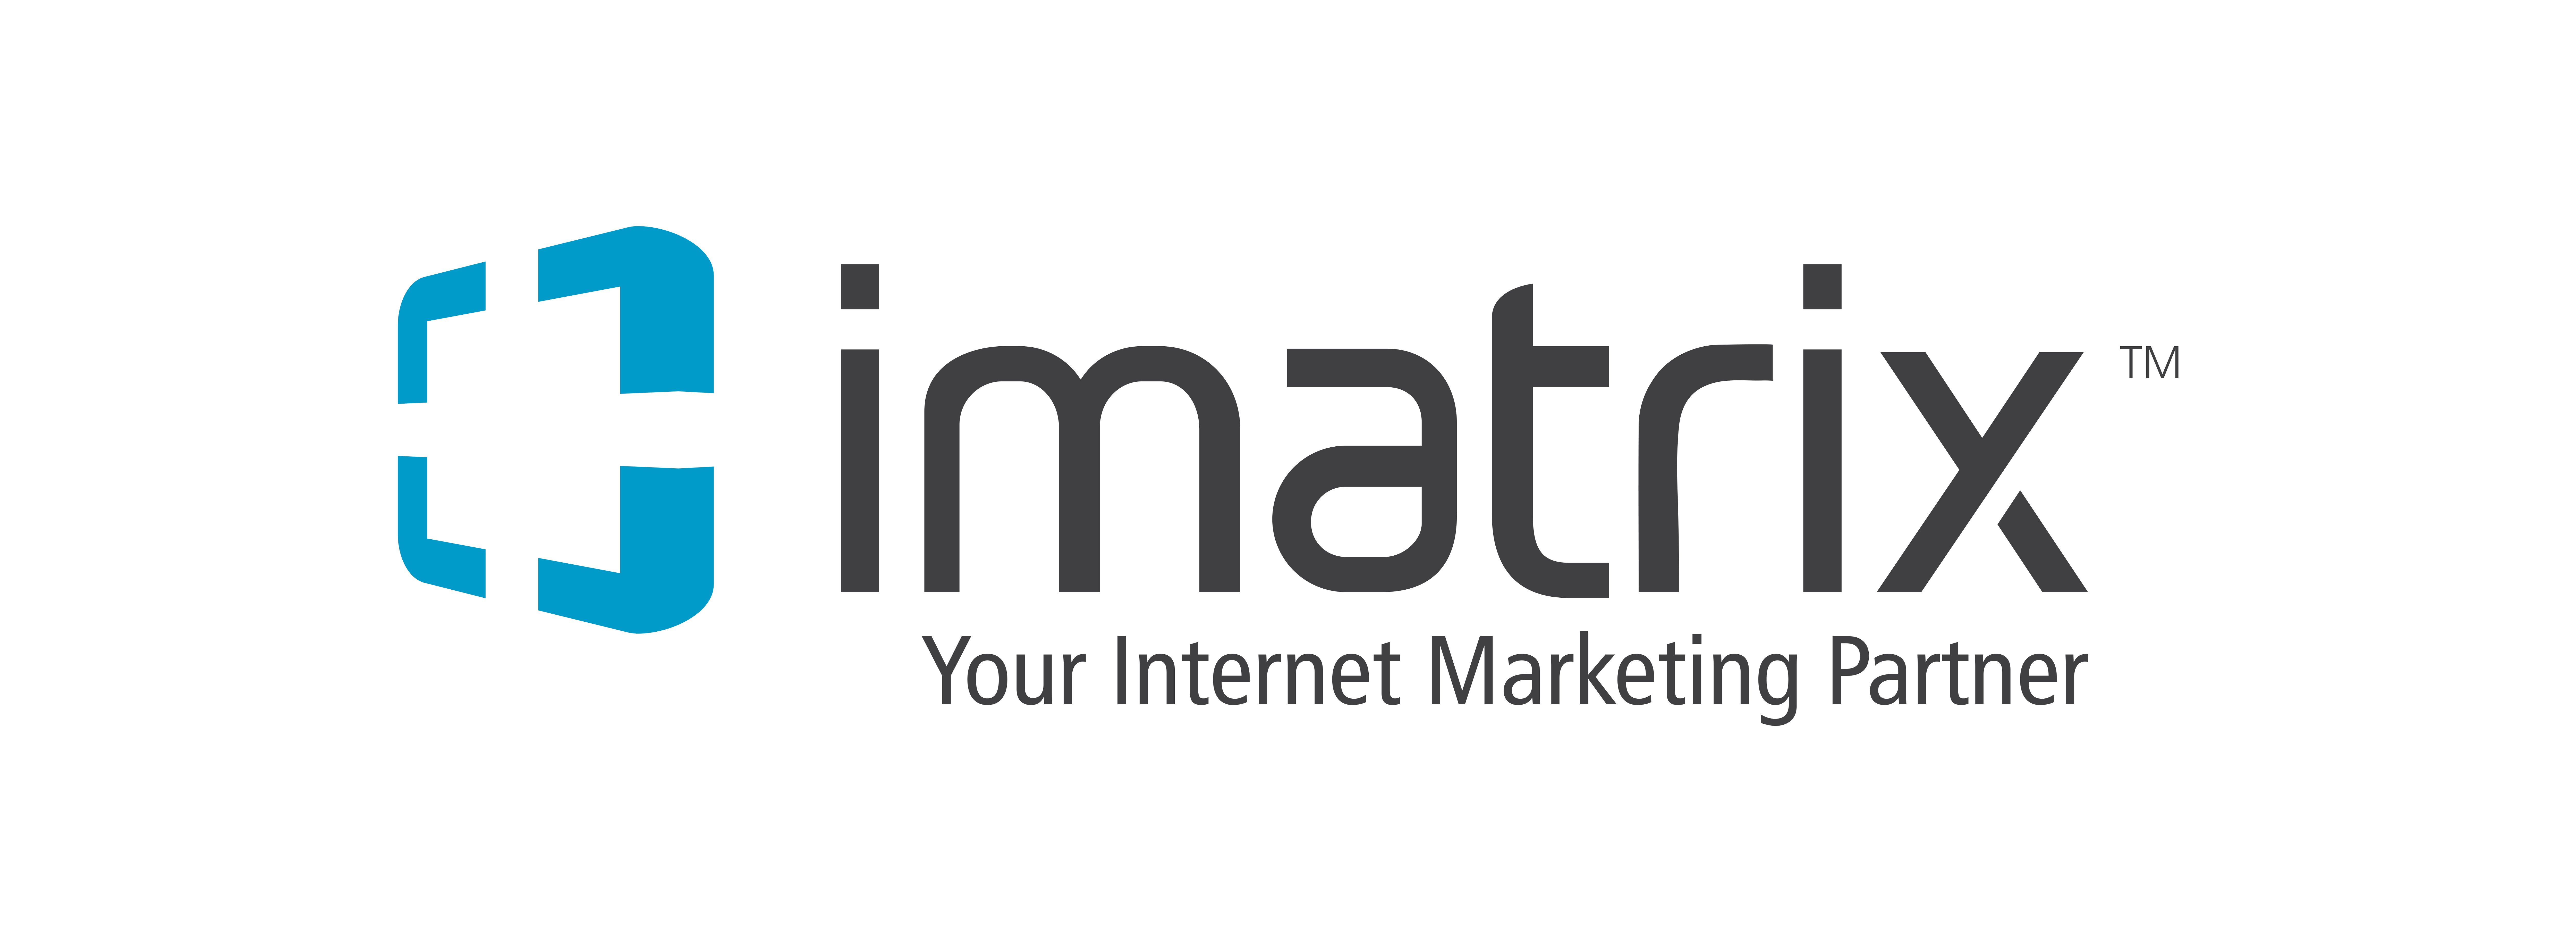 iMatrix Announces Re